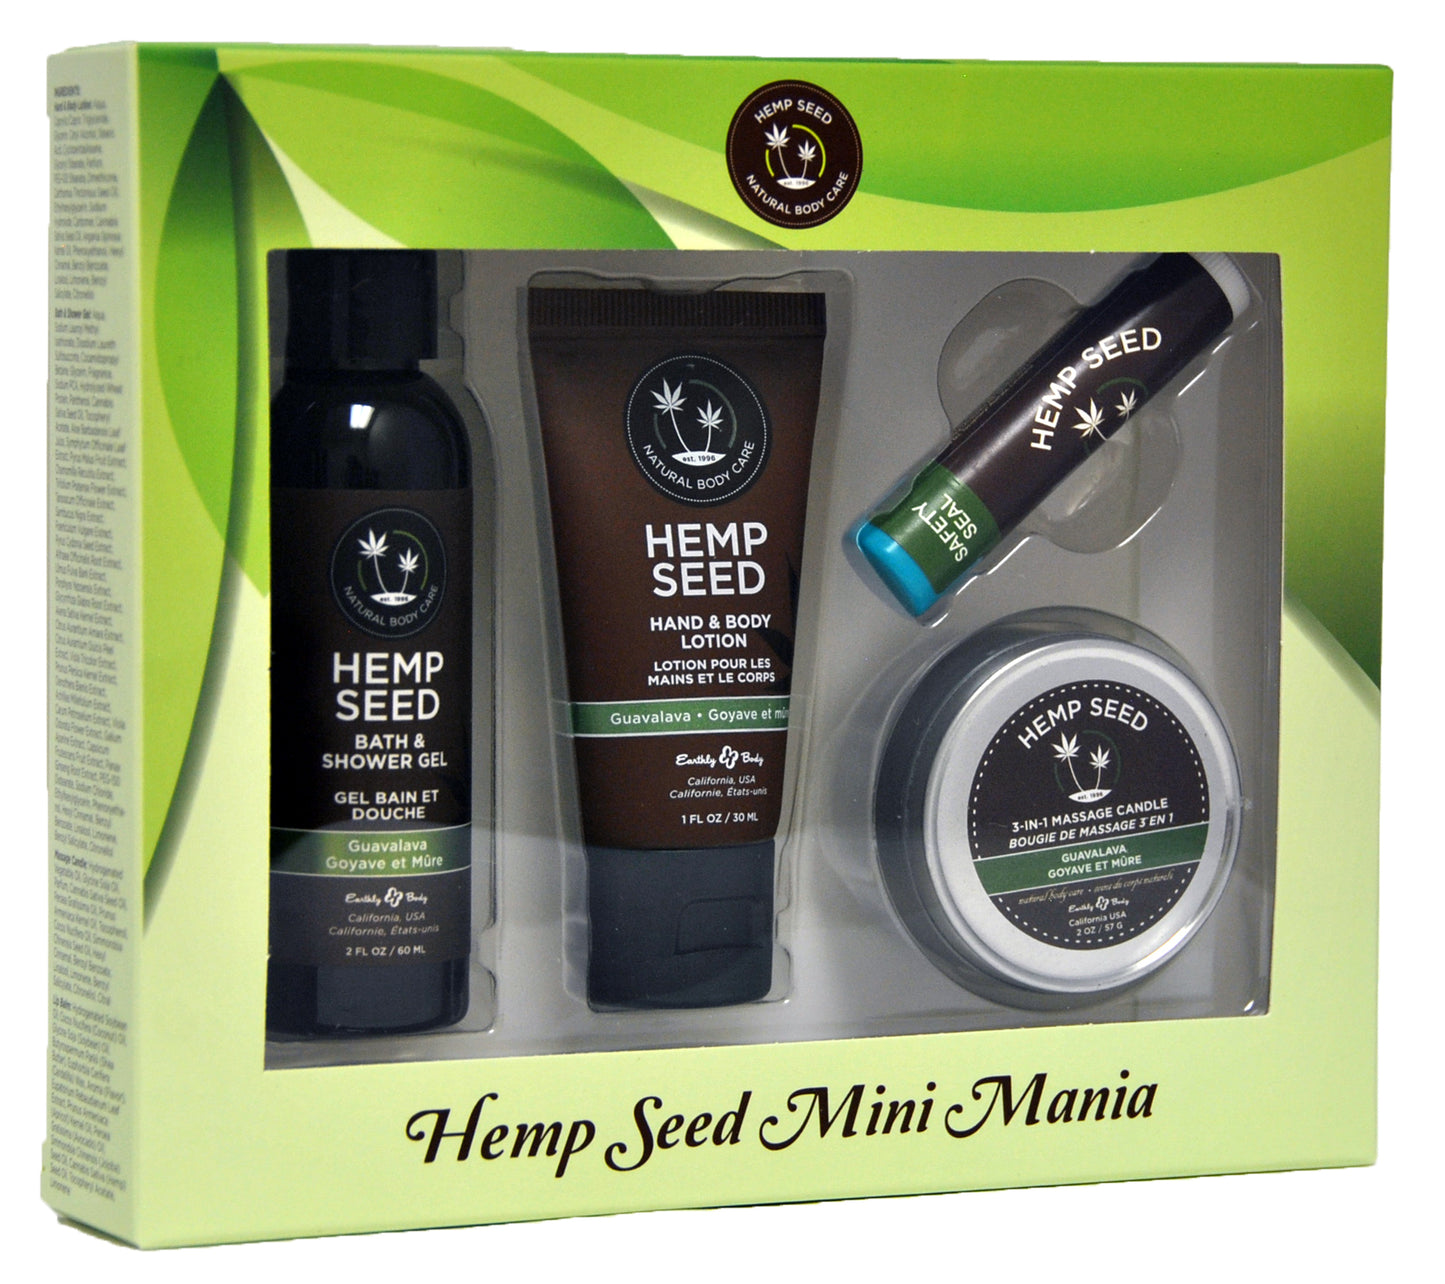 Hemp Seed Mini Mania Travel Set